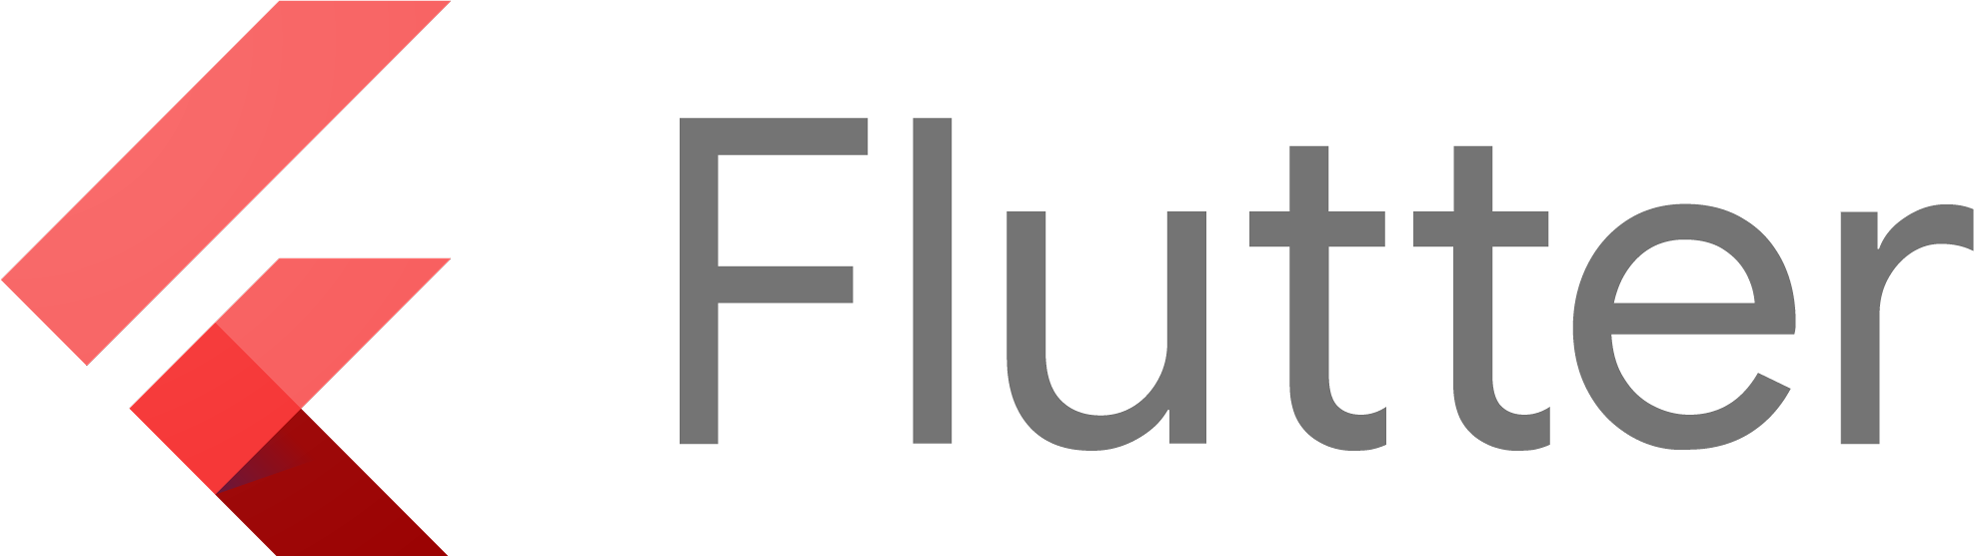 Flutter CN logo